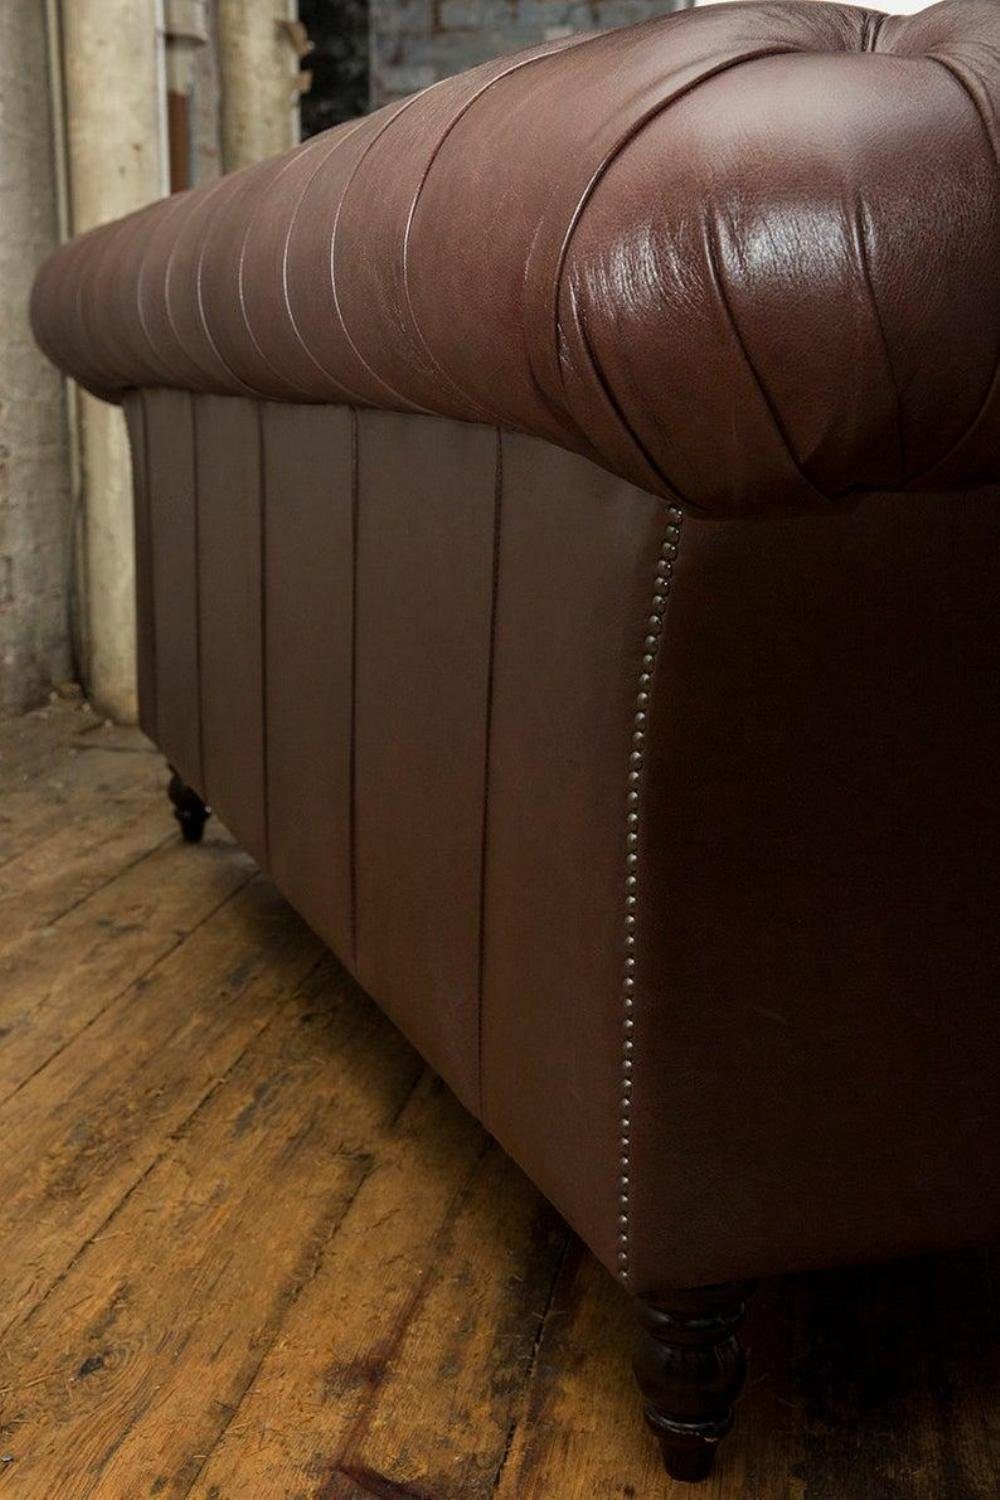 JVmoebel Chesterfield-Sofa 100% Sitzer Leder Made in Chesterfield Sofa Sofas Polster 3 Design Europe Sofort